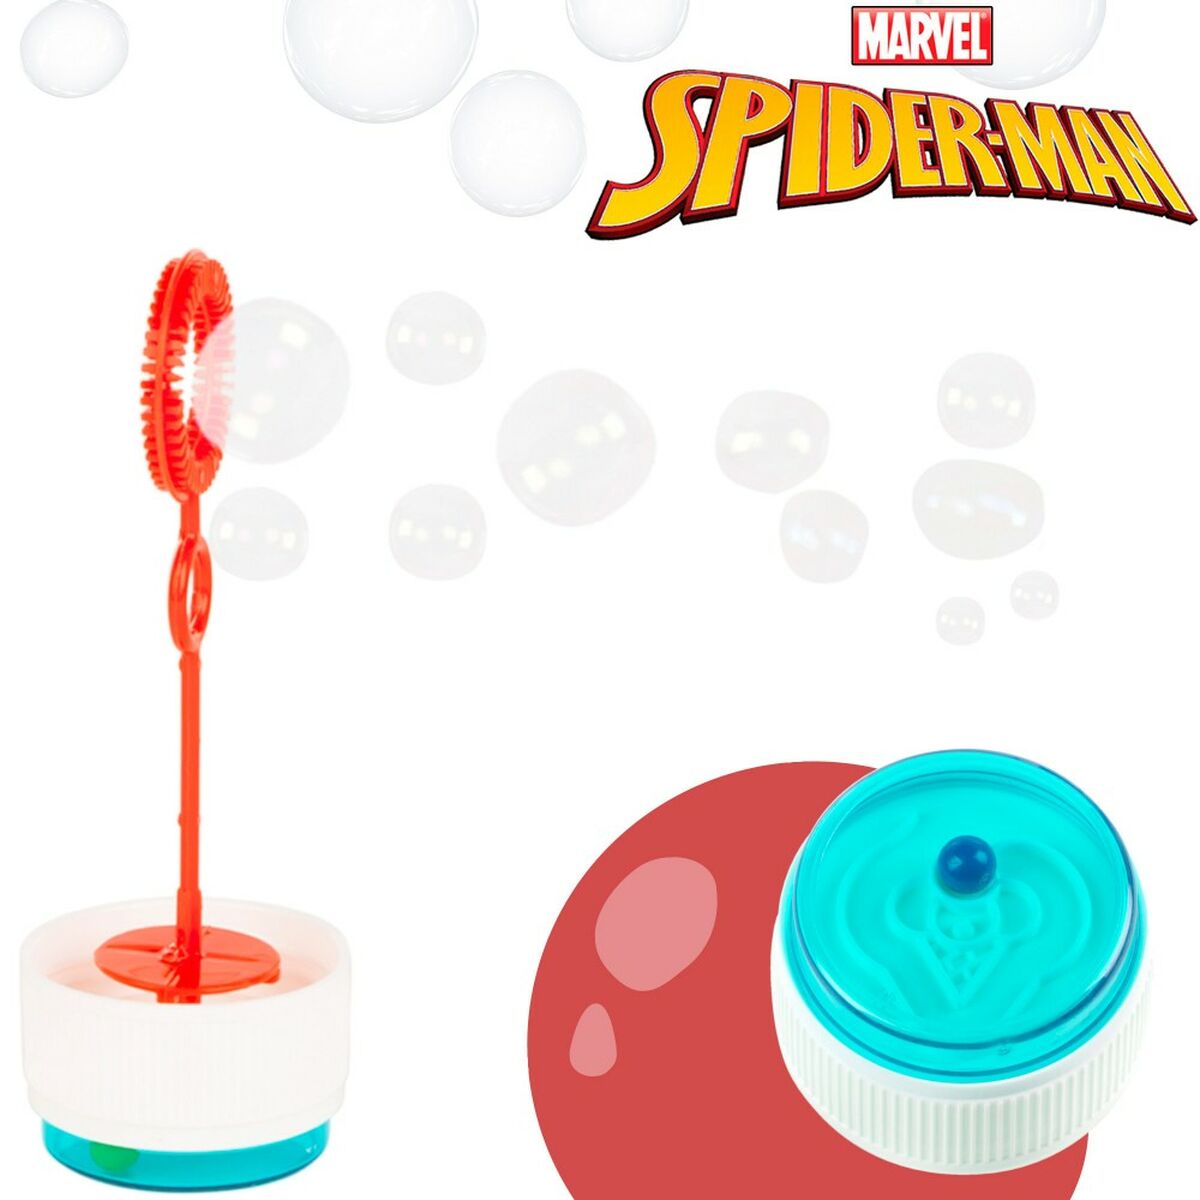 Bubbelpump Spider-Man 60 ml 3,8 x 11,5 x 3,8 cm (216 antal)-Leksaker och spel, Sport och utomhus-Spider-Man-peaceofhome.se